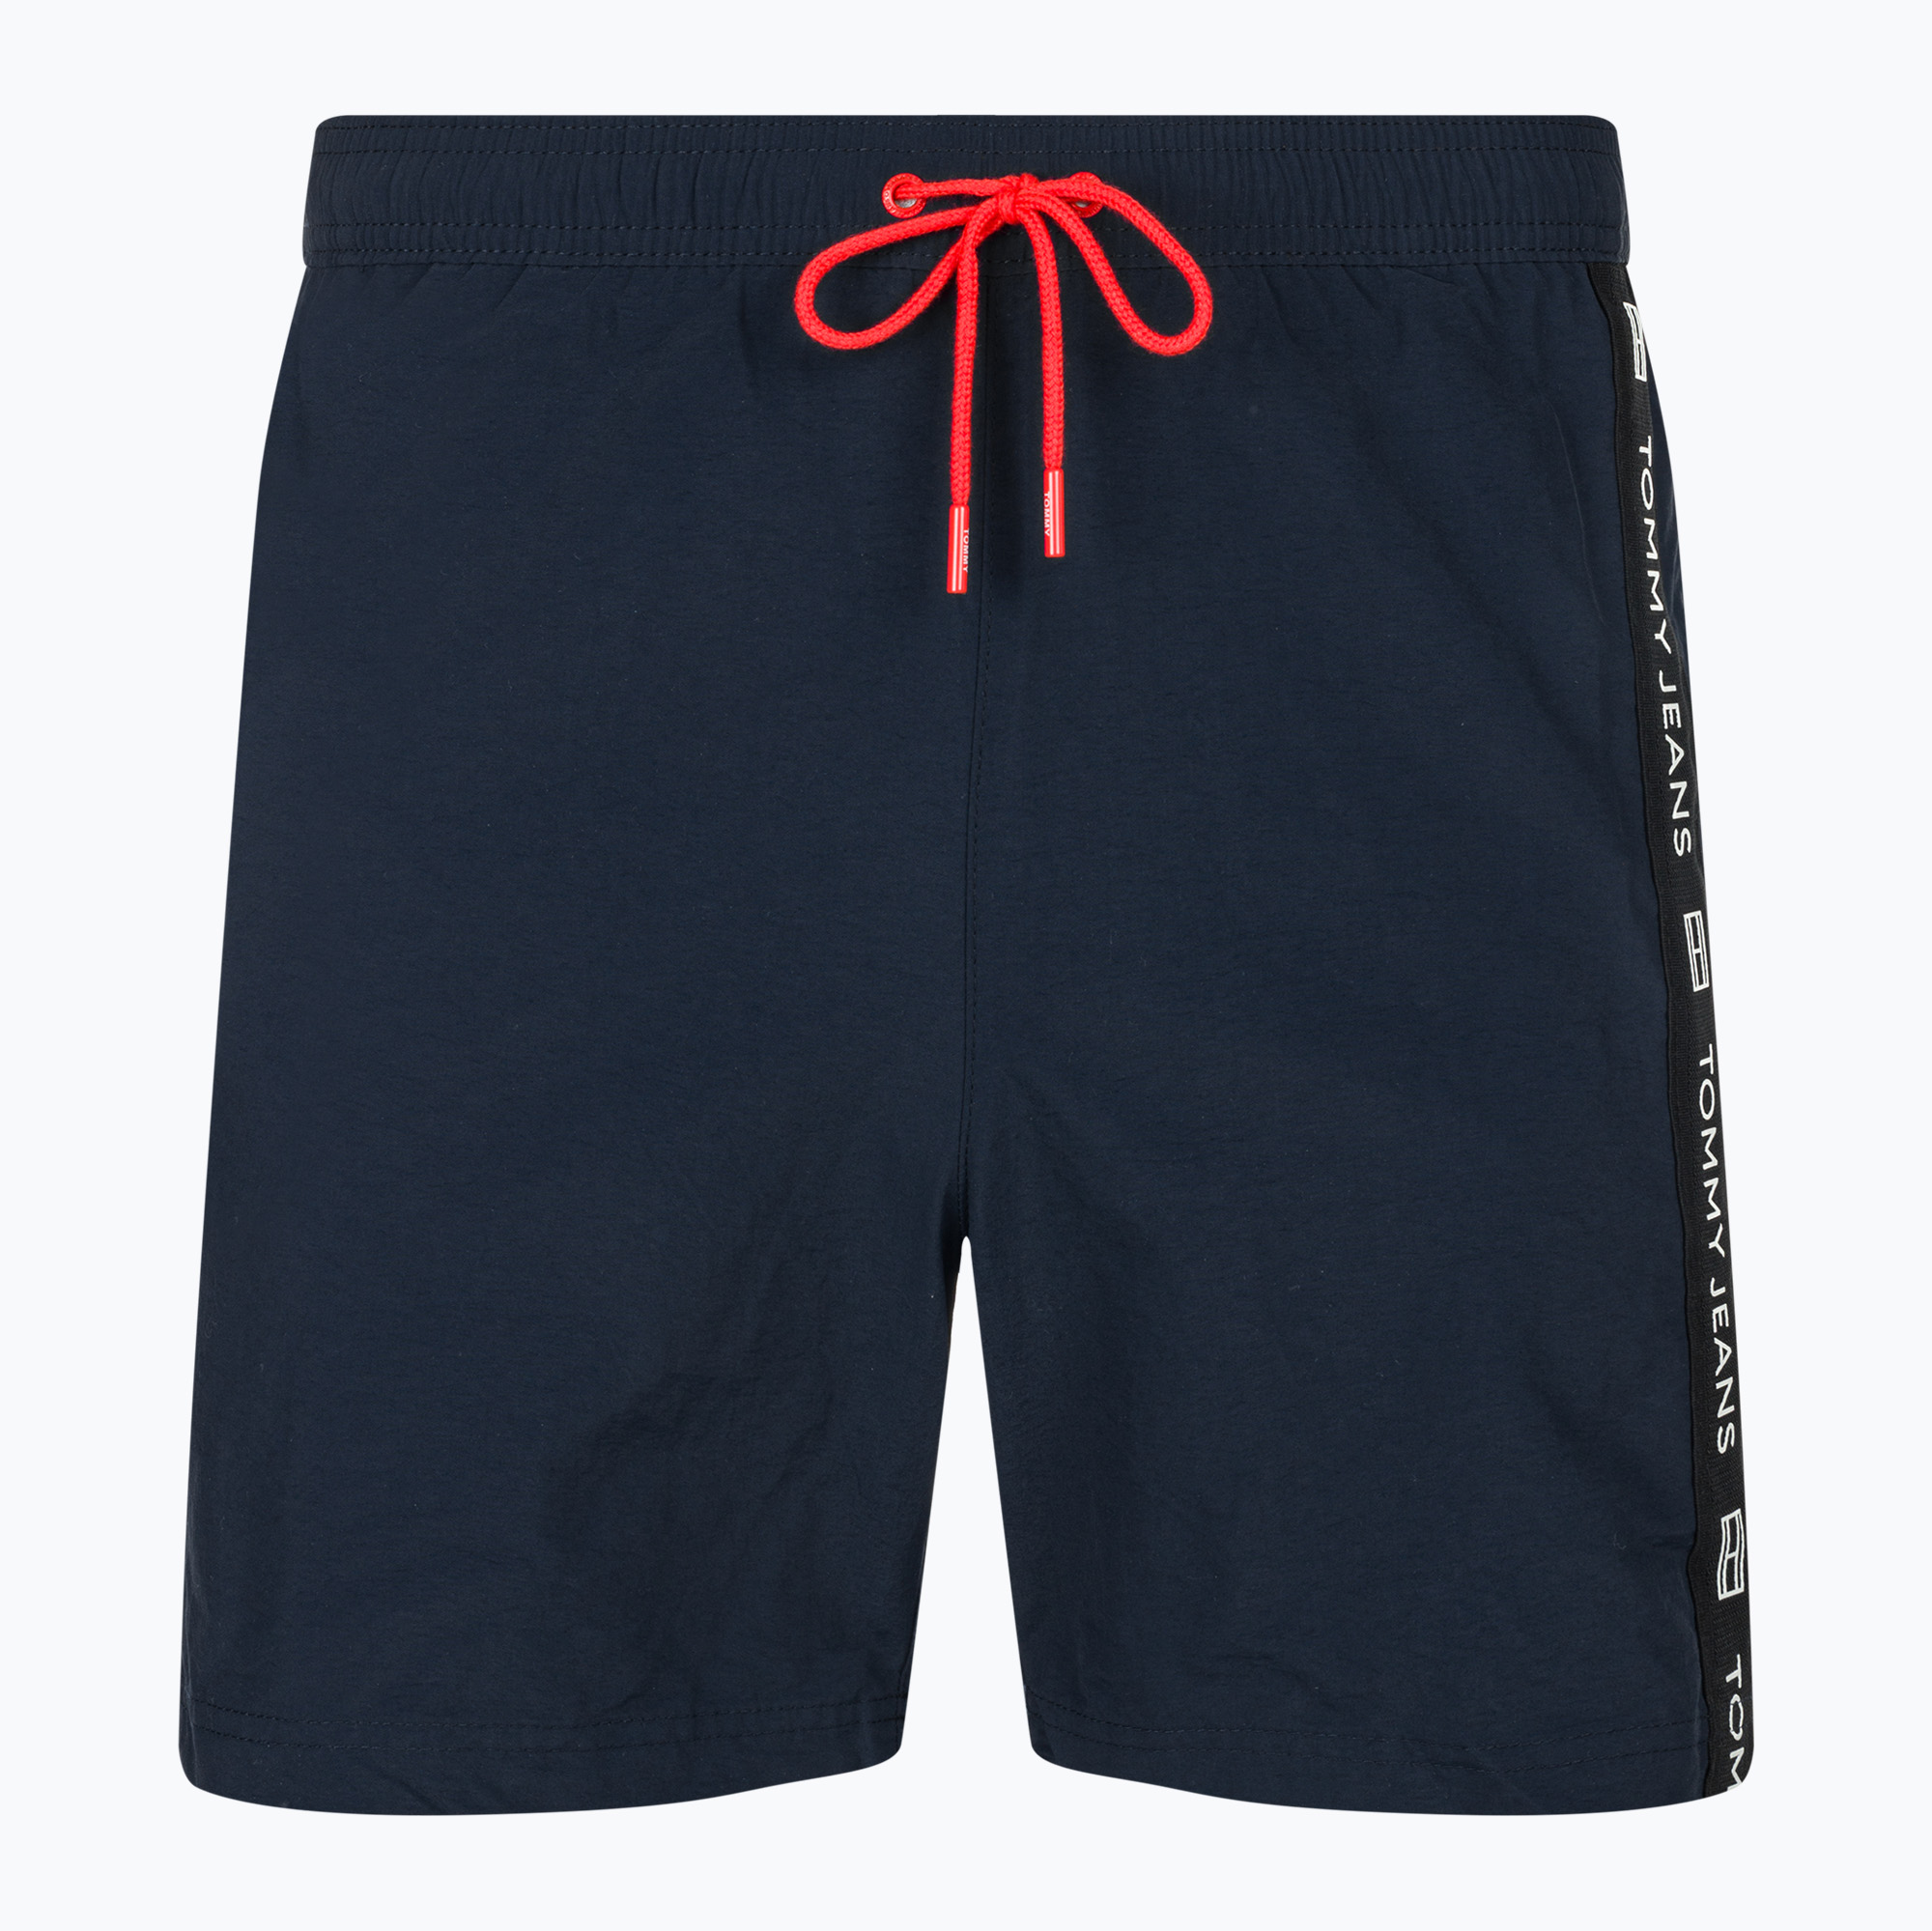 Pánske plavecké šortky Tommy Jeans SF Medium Drawstring Side Tape dark night navy